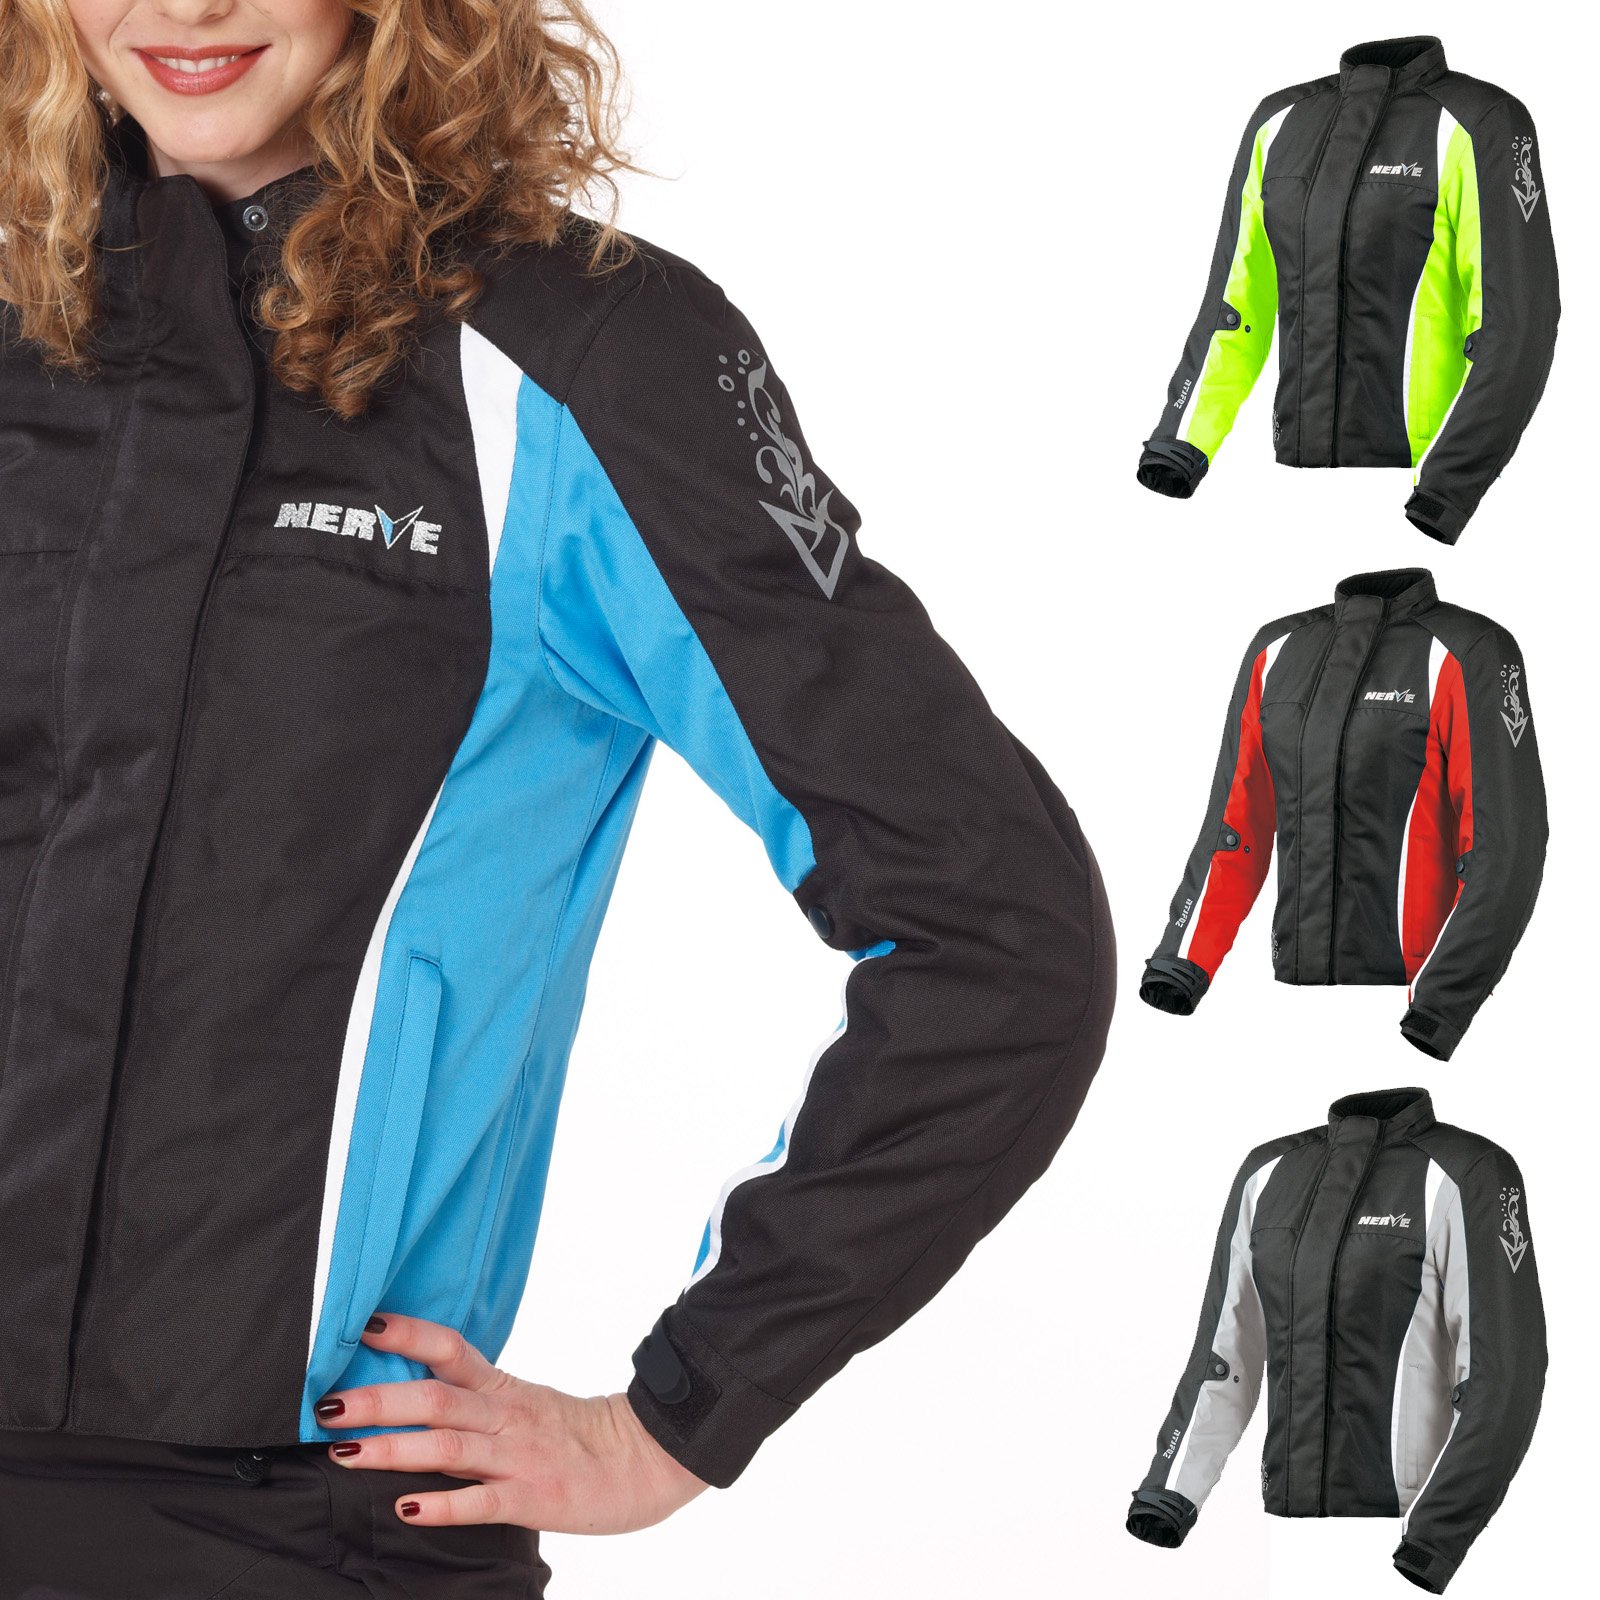 Nerve Shop Motorradjacke -Unique- Motorrad Damen Wasserdicht Jacke mit Protektoren Sommer Winter Textil Frauen - schwarz-blau - 48